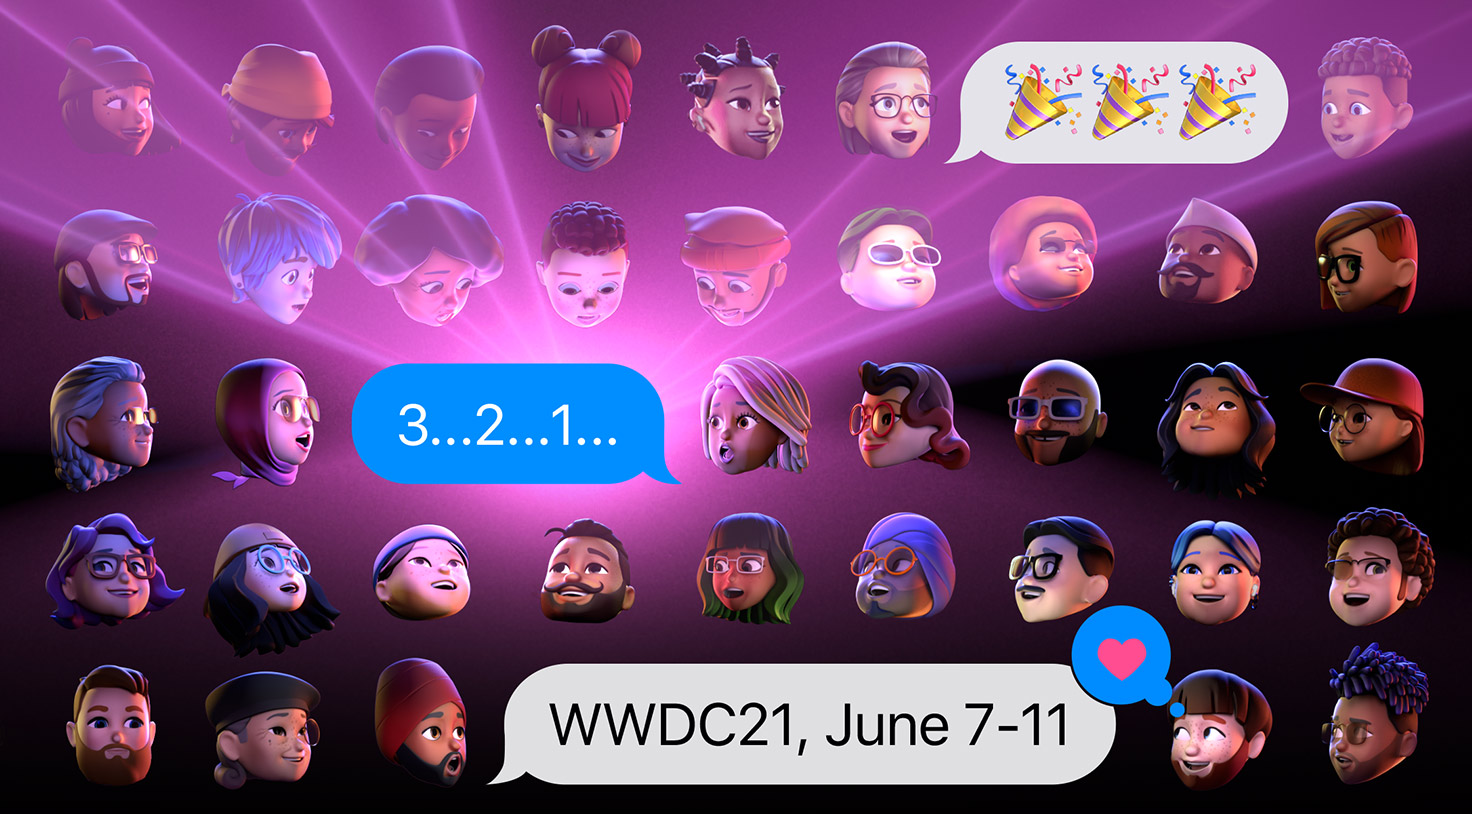 WWDC21, June 7-11